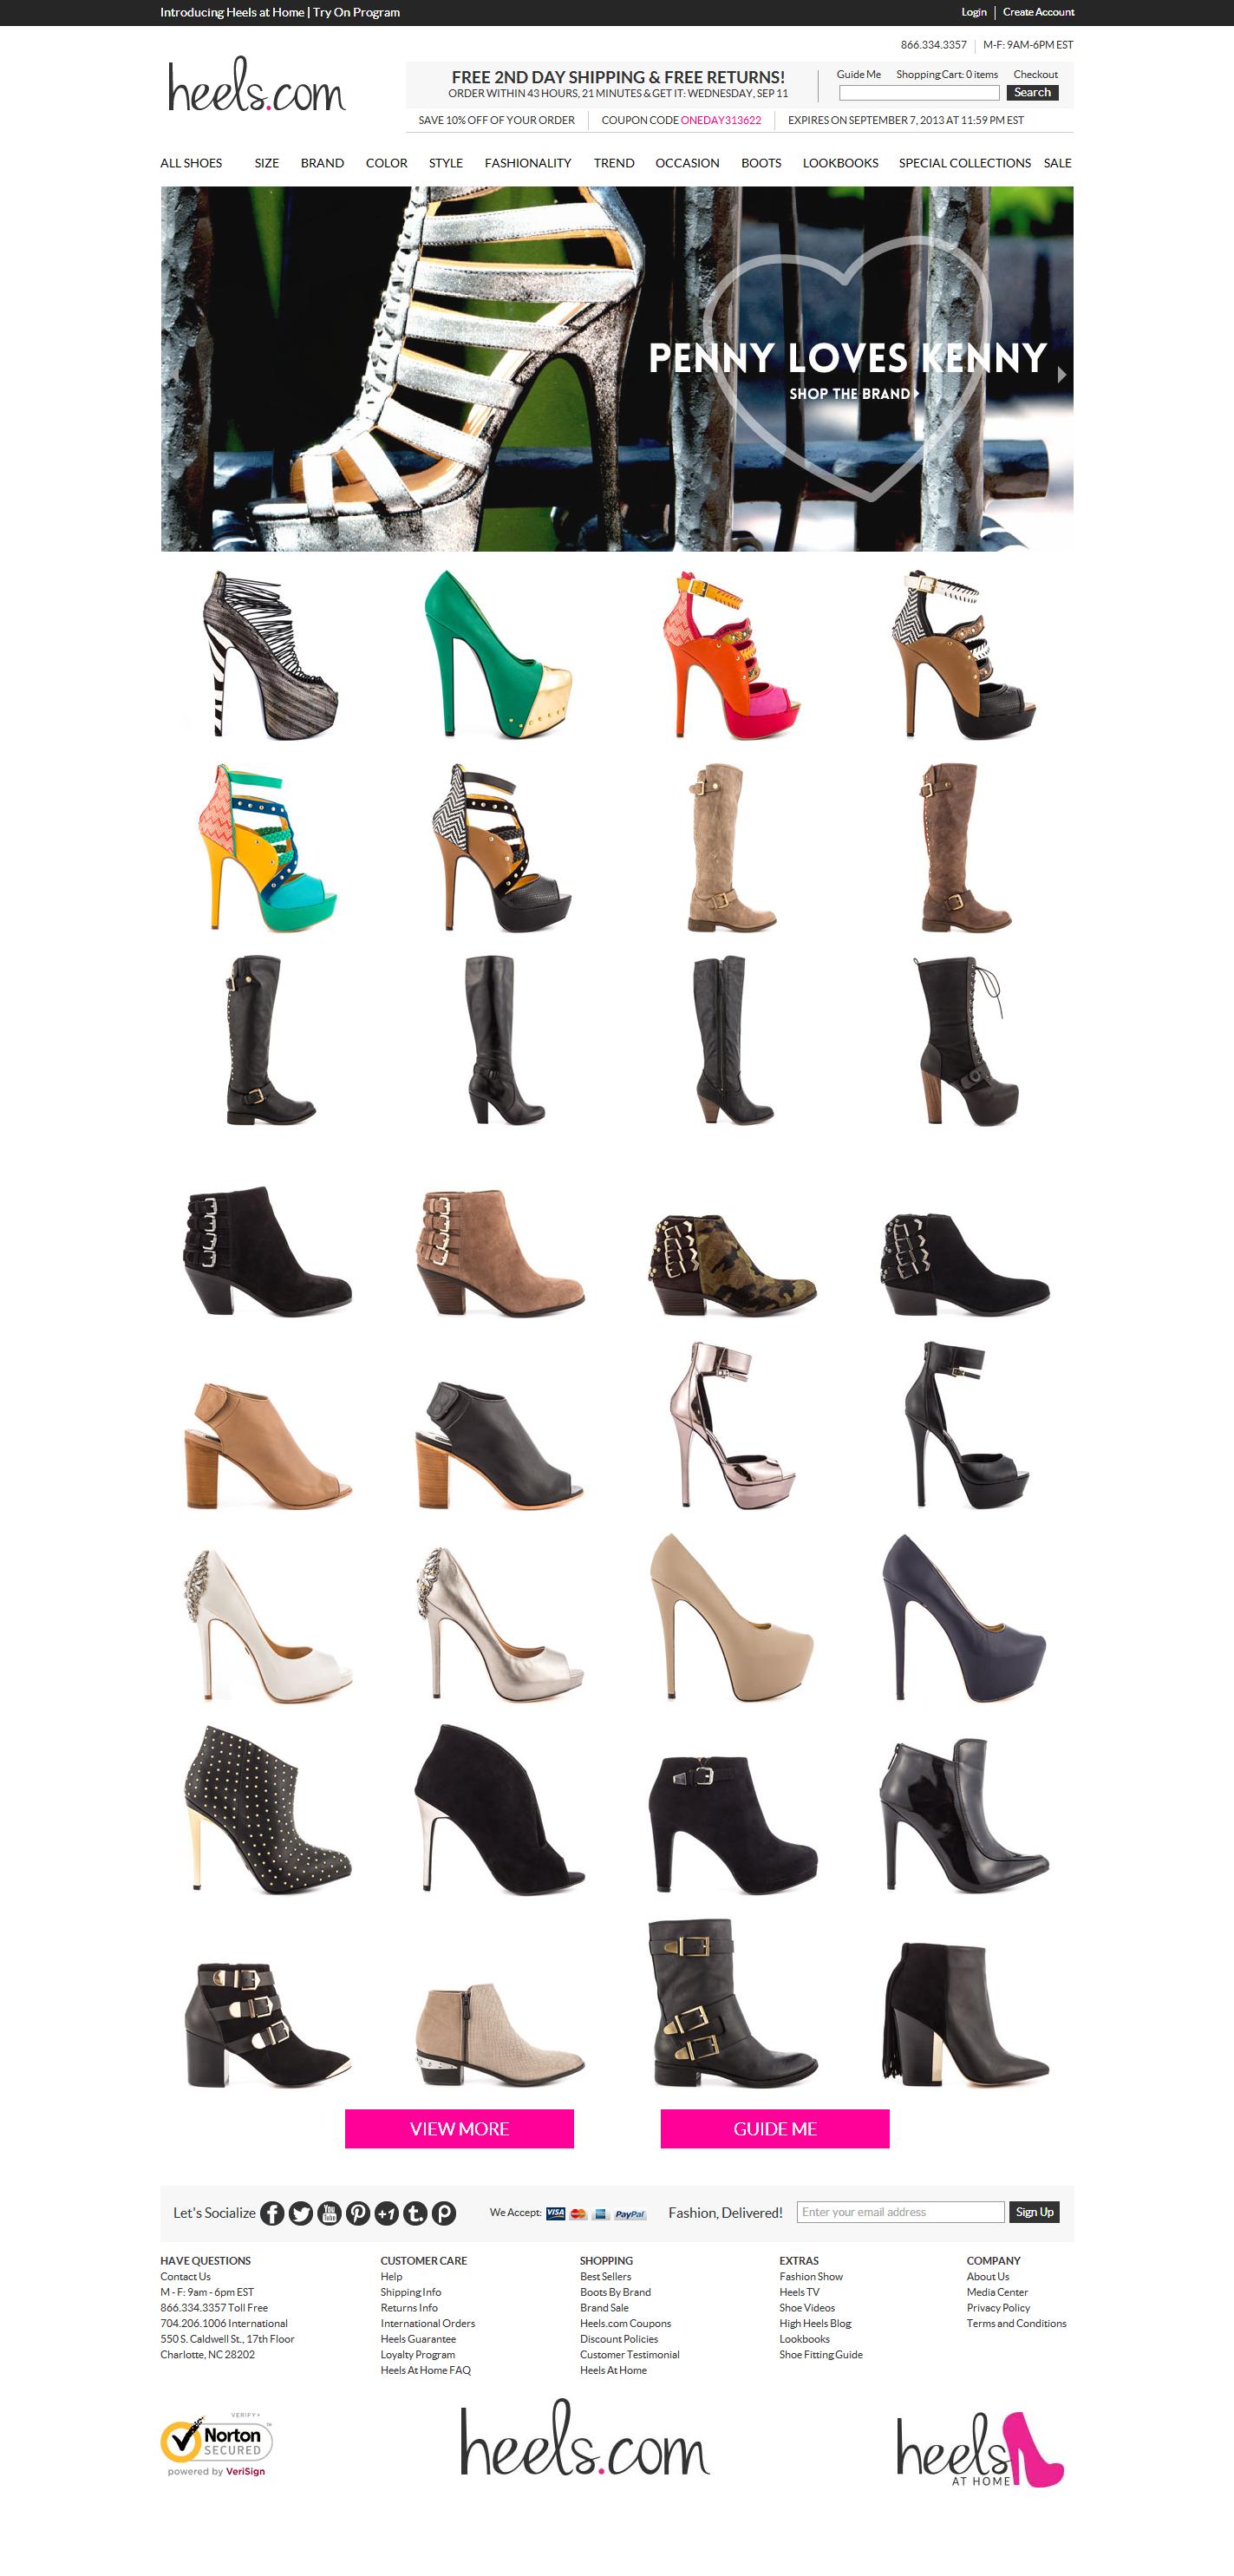 Women\'s Shoes, Dress Shoes, High Heels, Women\'s Boots, Evening Shoes, Heels.com.jpg